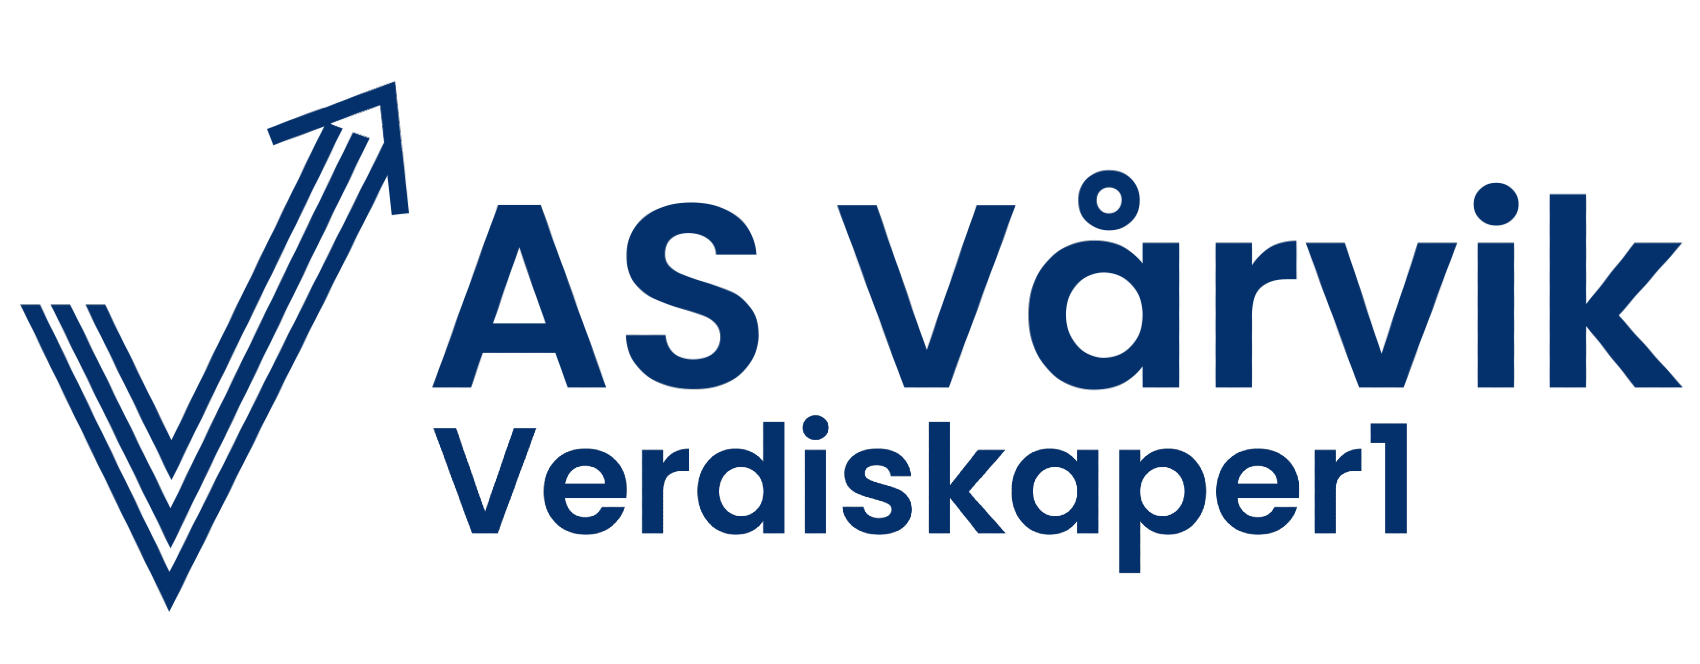 The logo for Atle Vårvik